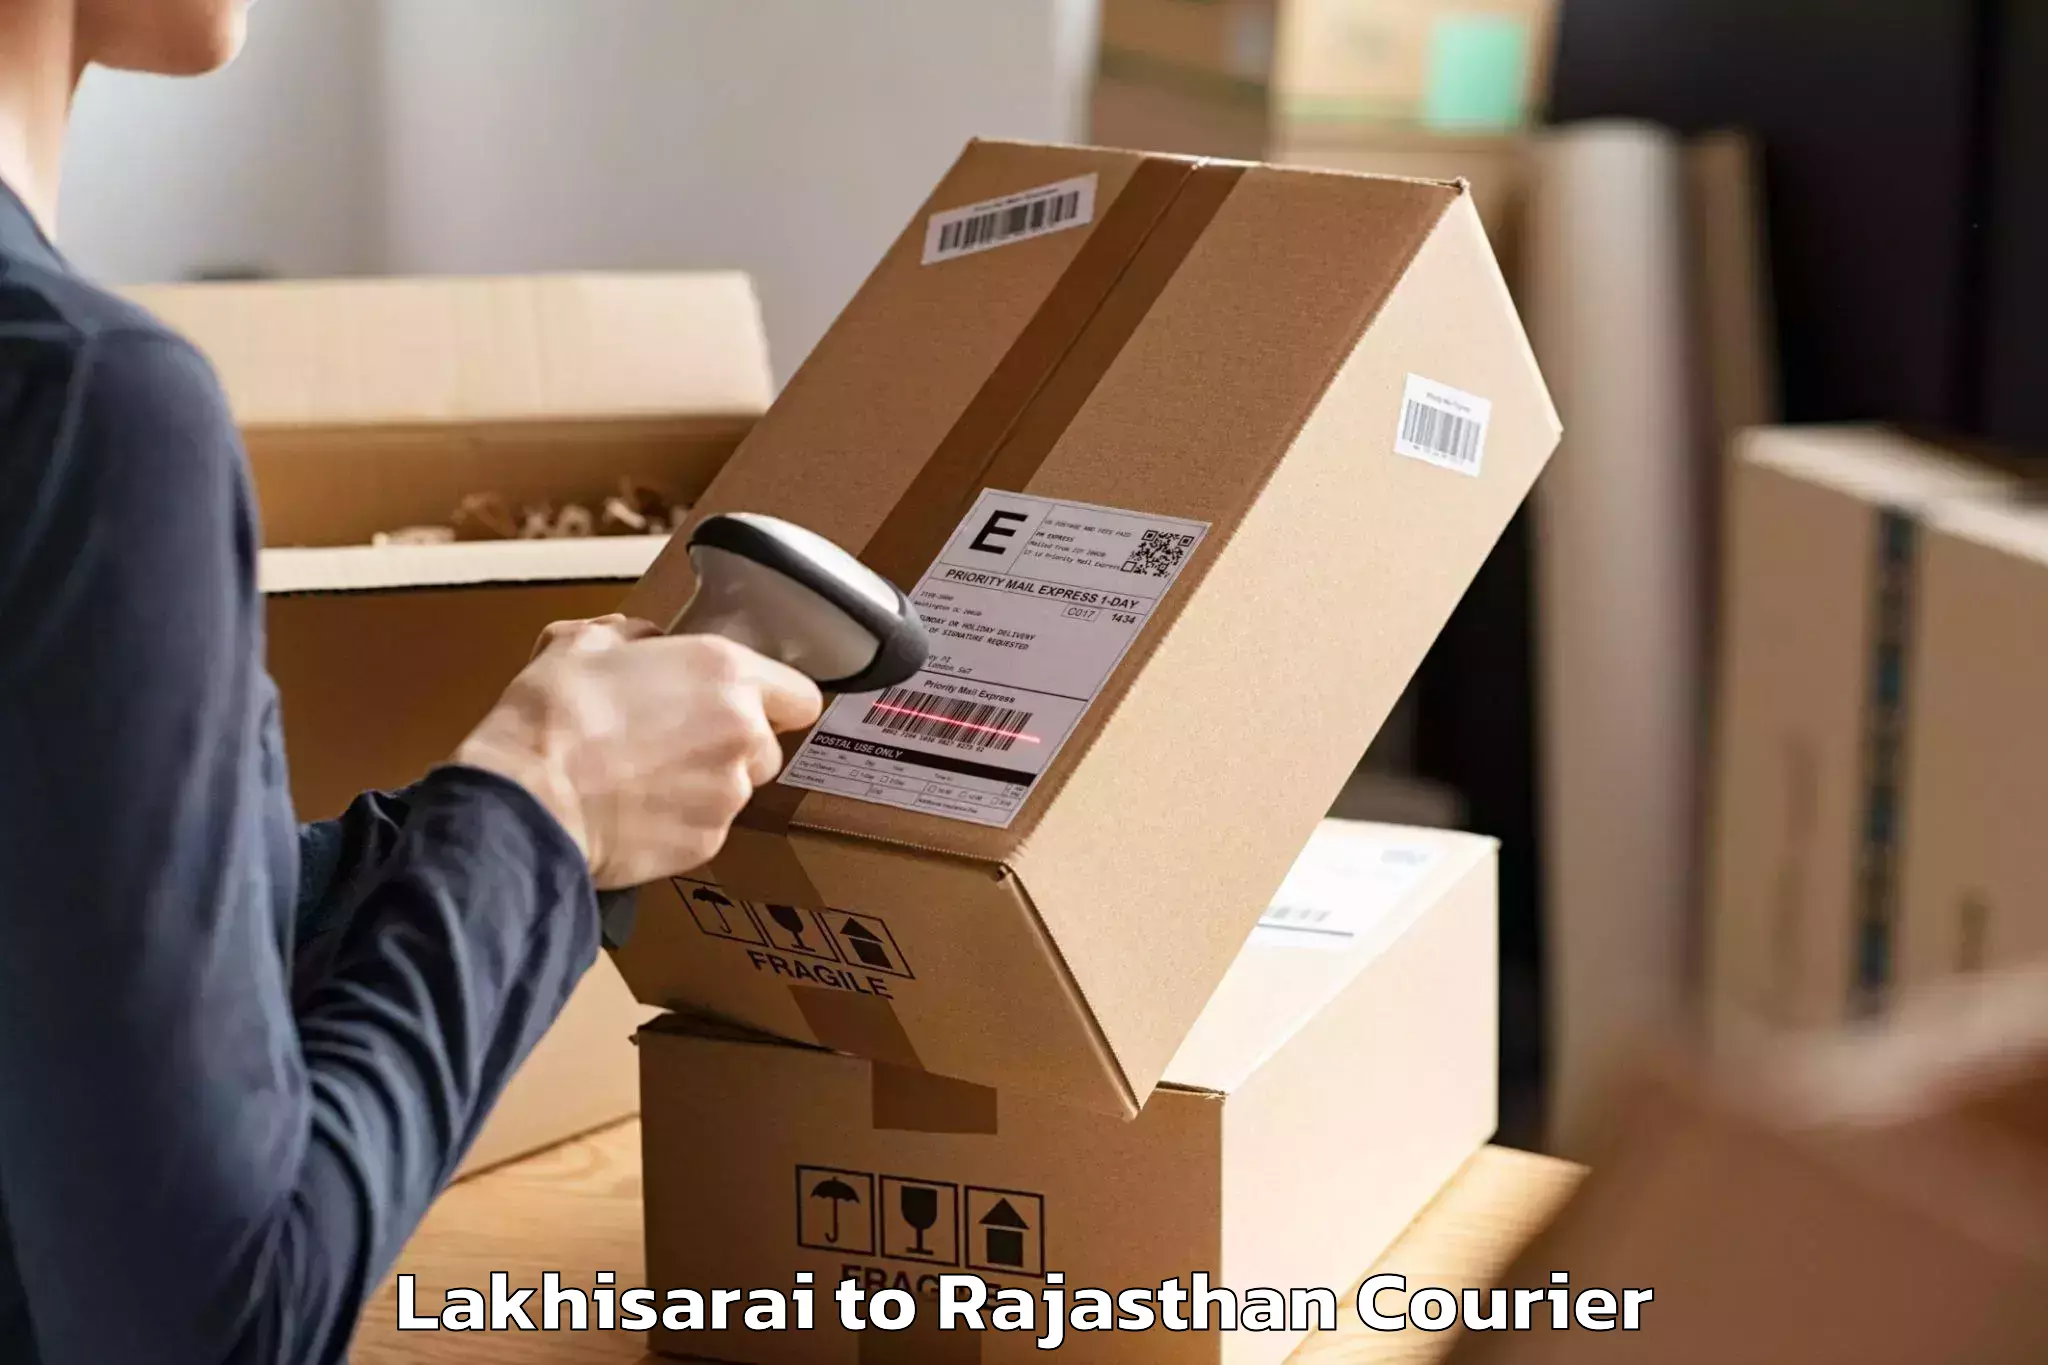 Efficient moving company Lakhisarai to Bharatpur